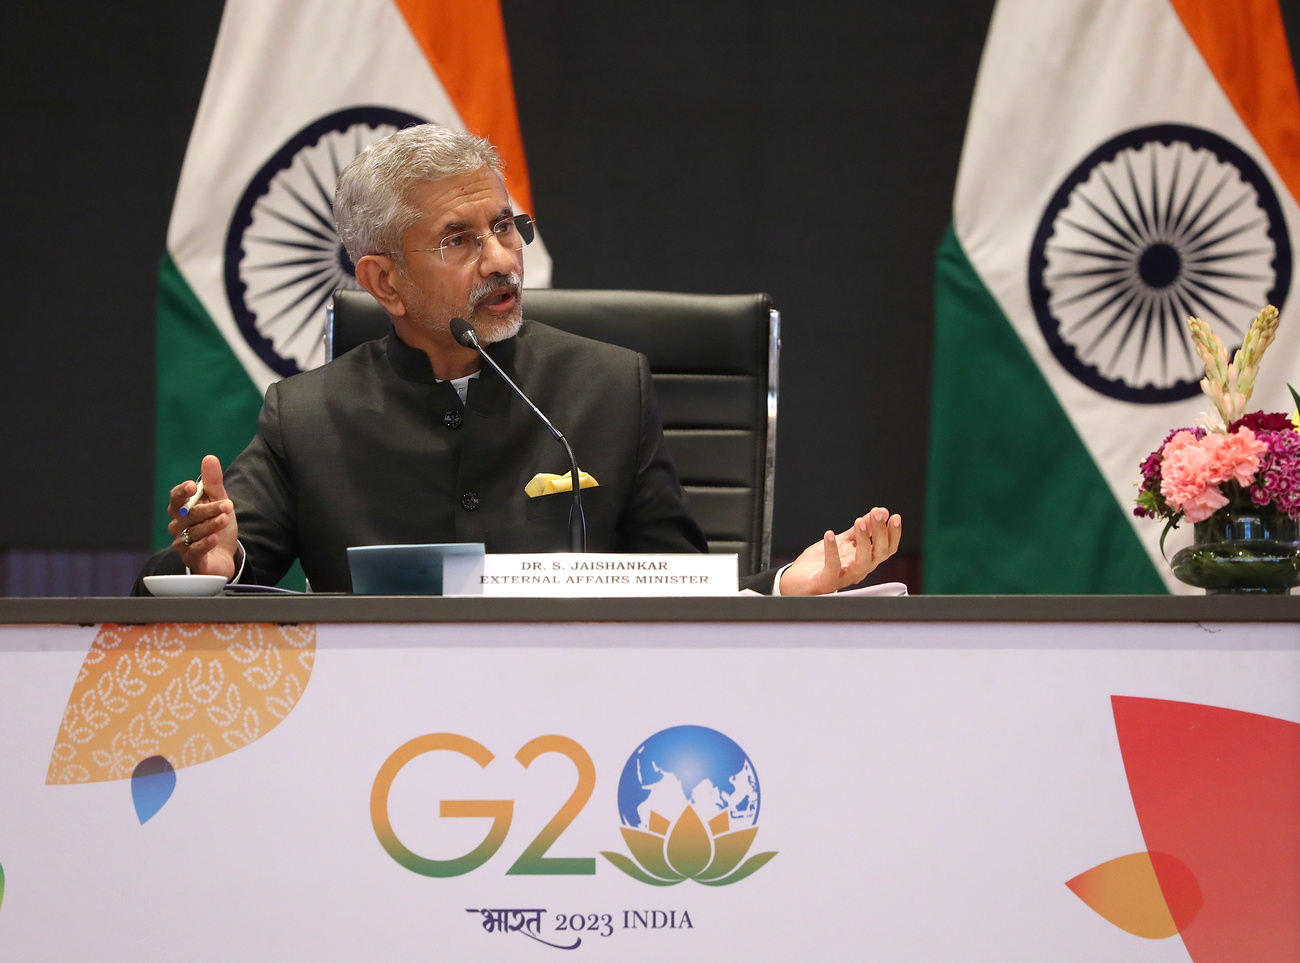 Le ministre indien des Affaires étrangères lors de la réunion du G20 à New Delhi, le 2 mars 2023. [EPA/Keystone - Harish Tyagi]